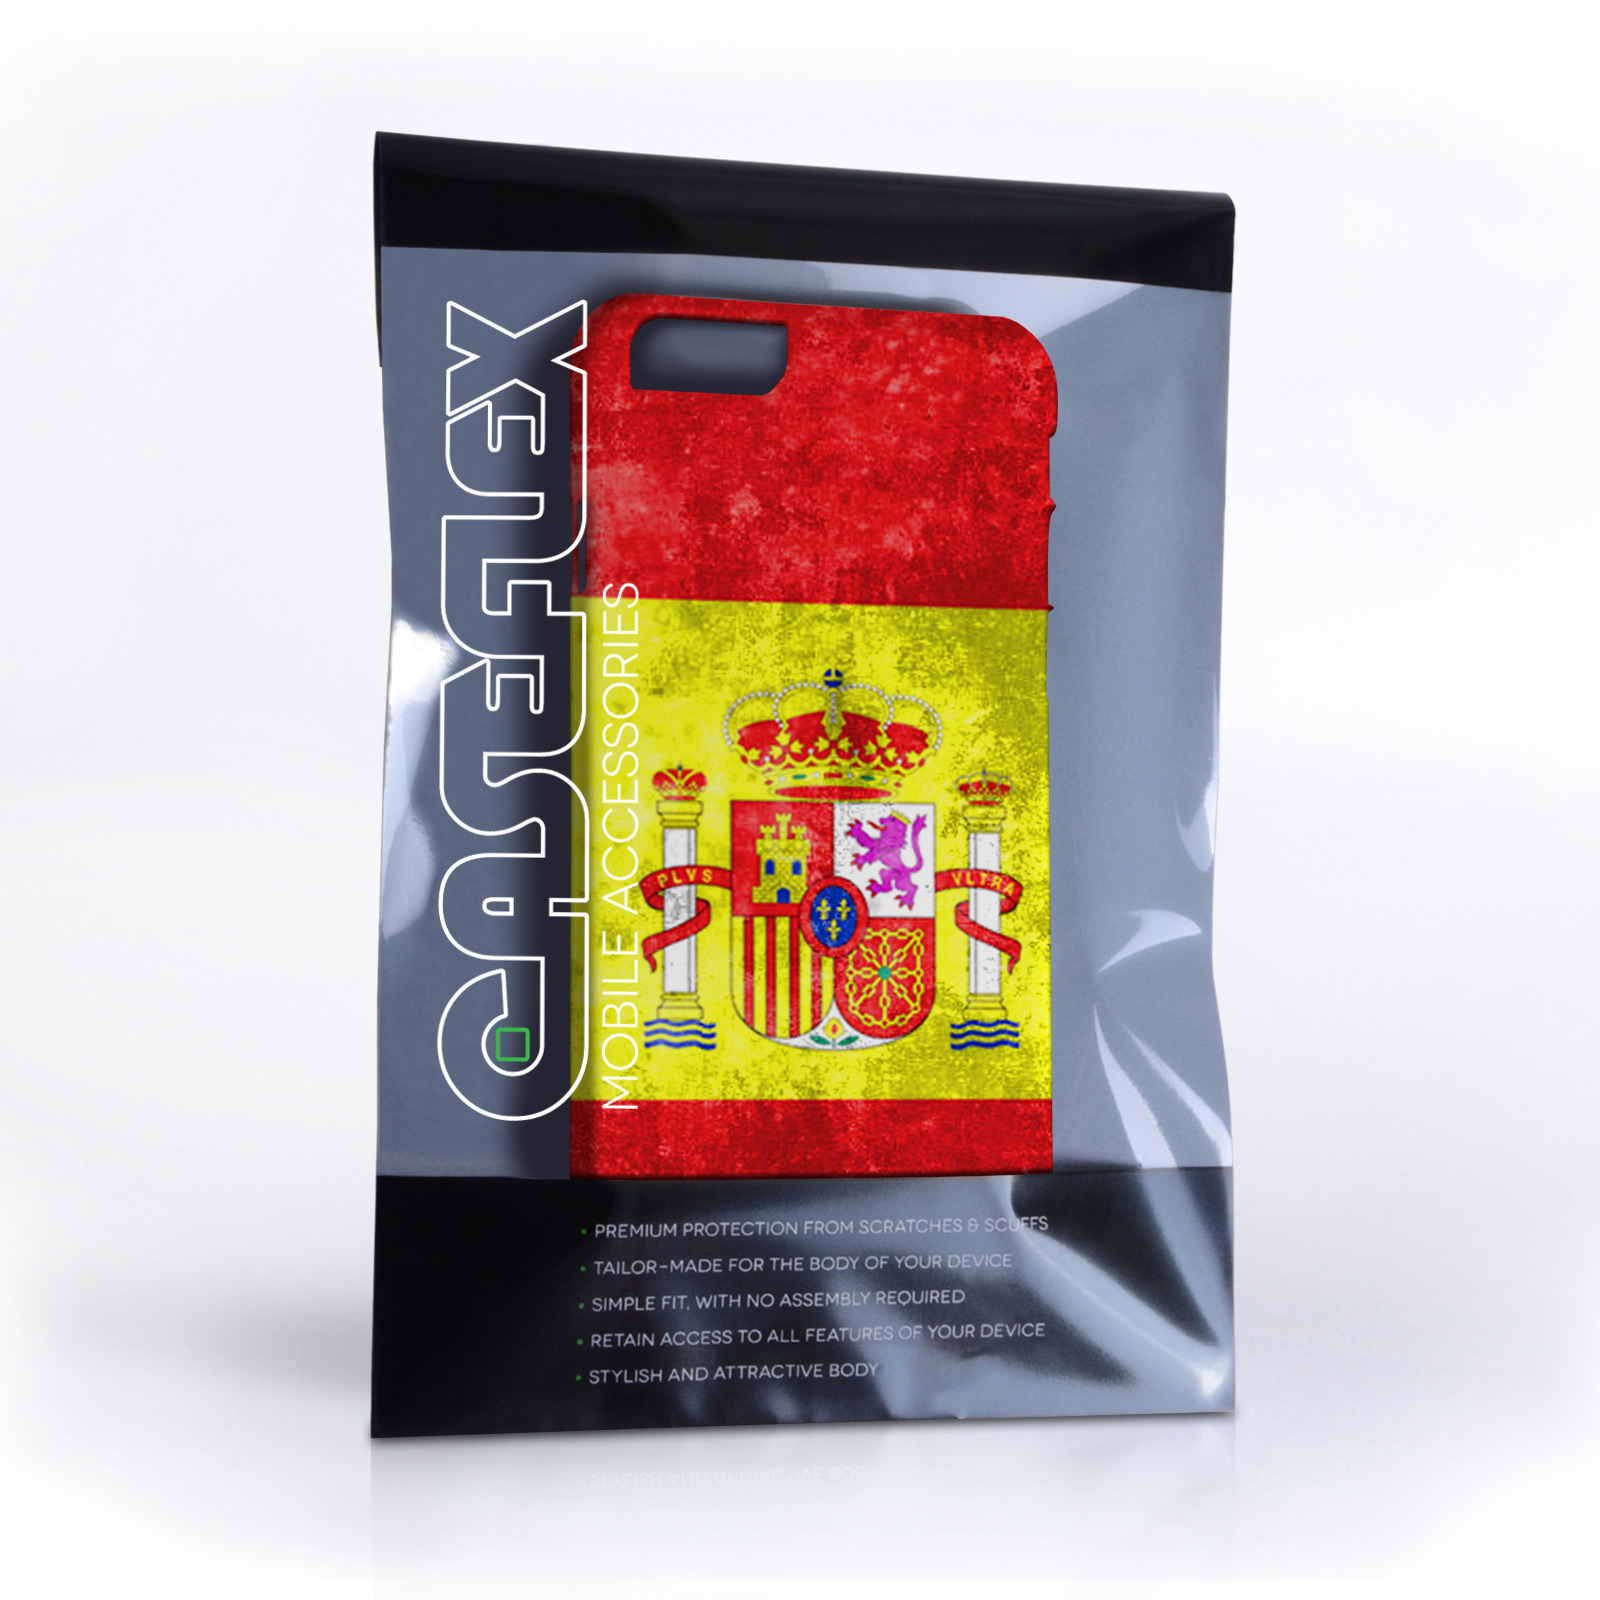 Caseflex iPhone 6 and 6s Retro Spain Flag Case